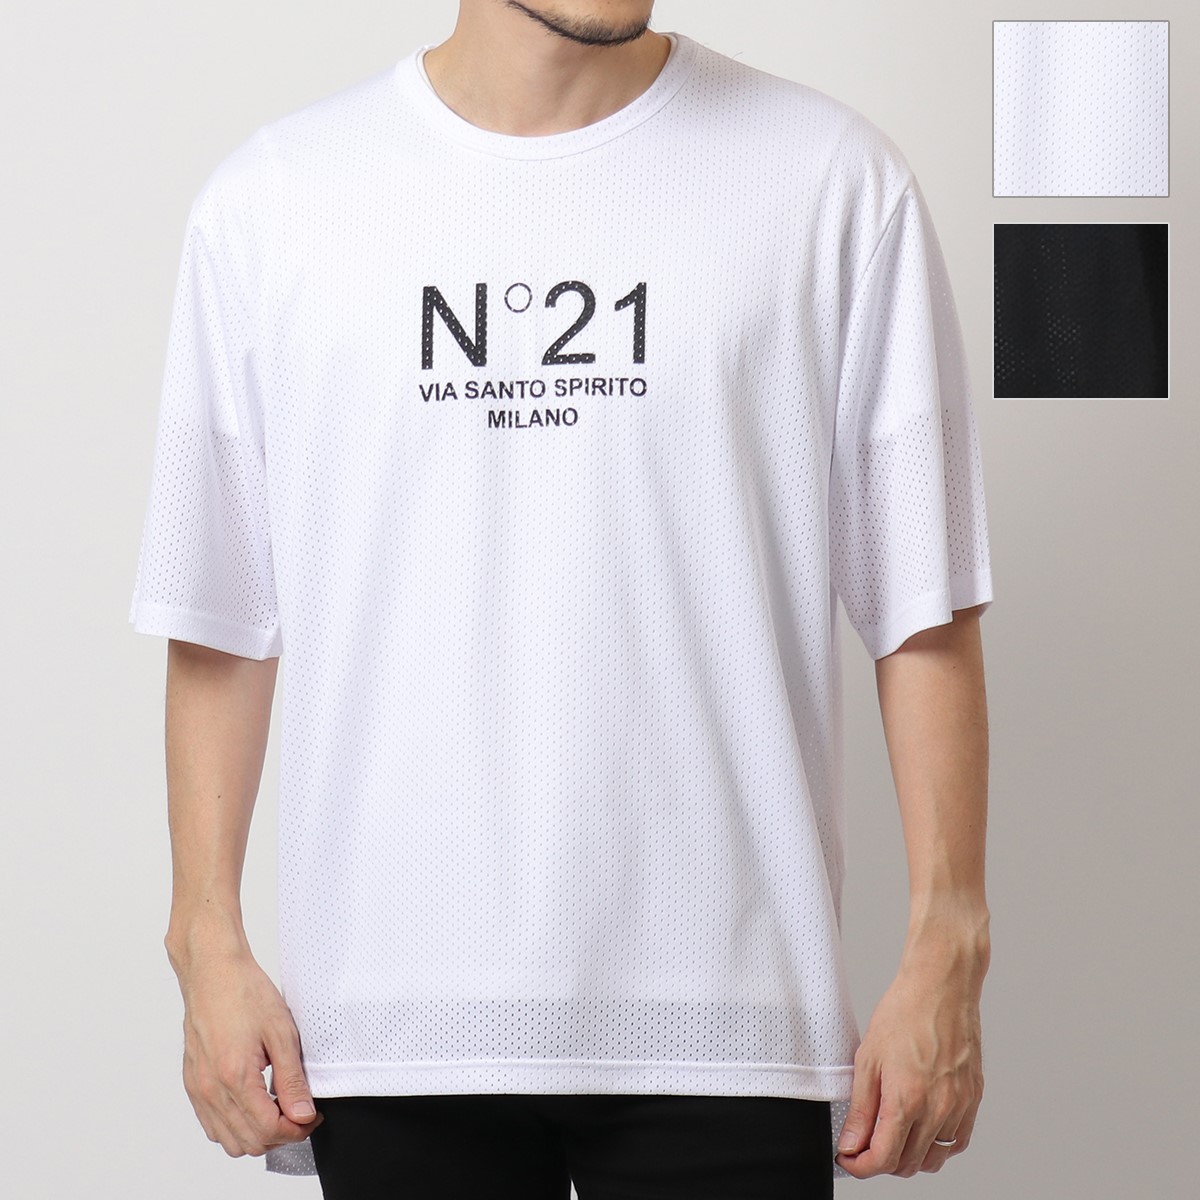 N°21 ヌメロヴェントゥーノ F072 4855 カラー2色 メッシュ クルーネック 半袖 Tシャツ カットソー ロゴT オーバーサイズ メンズ |  インポートセレクト musee